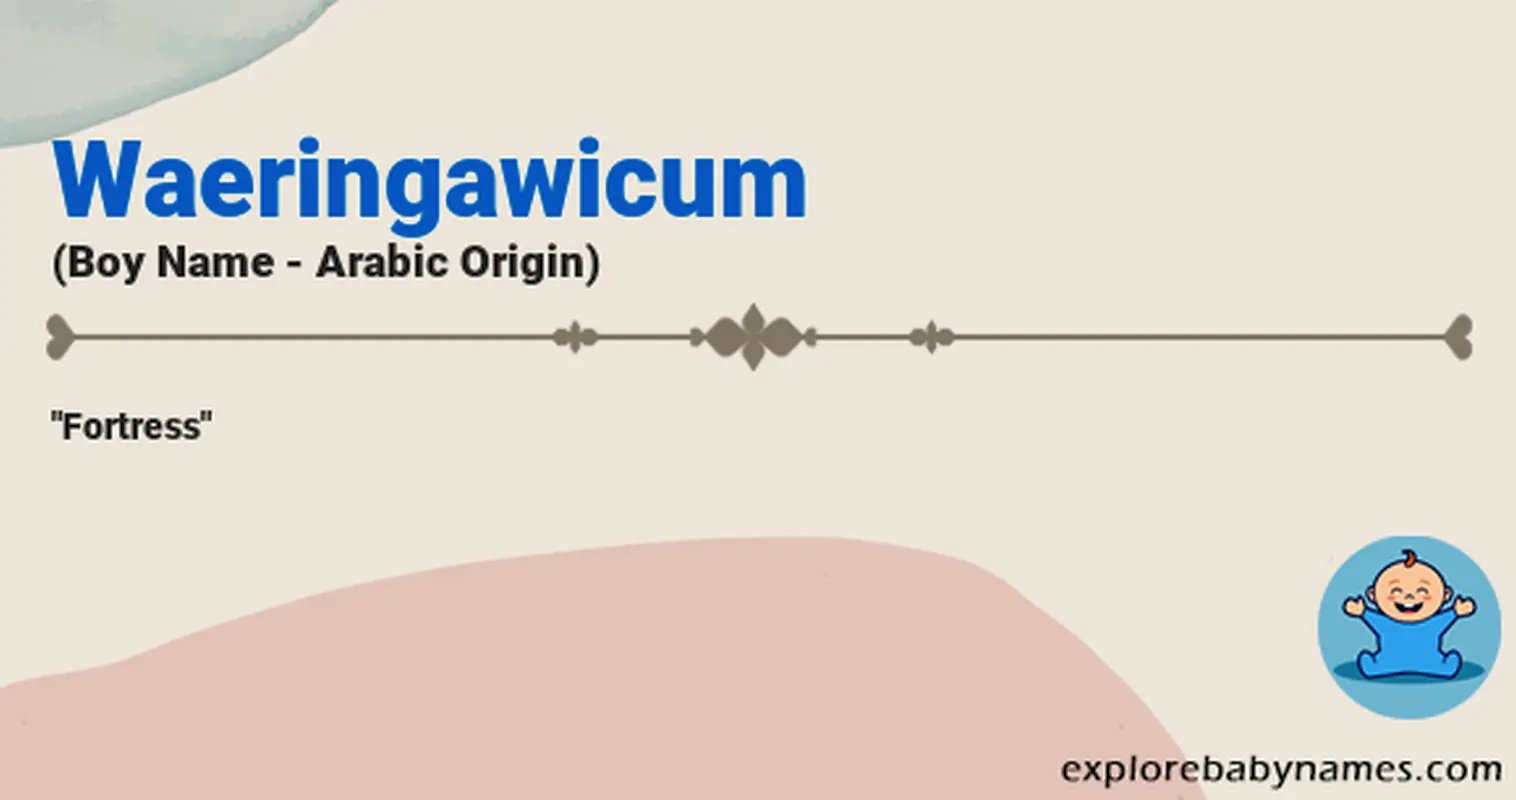 Meaning of Waeringawicum